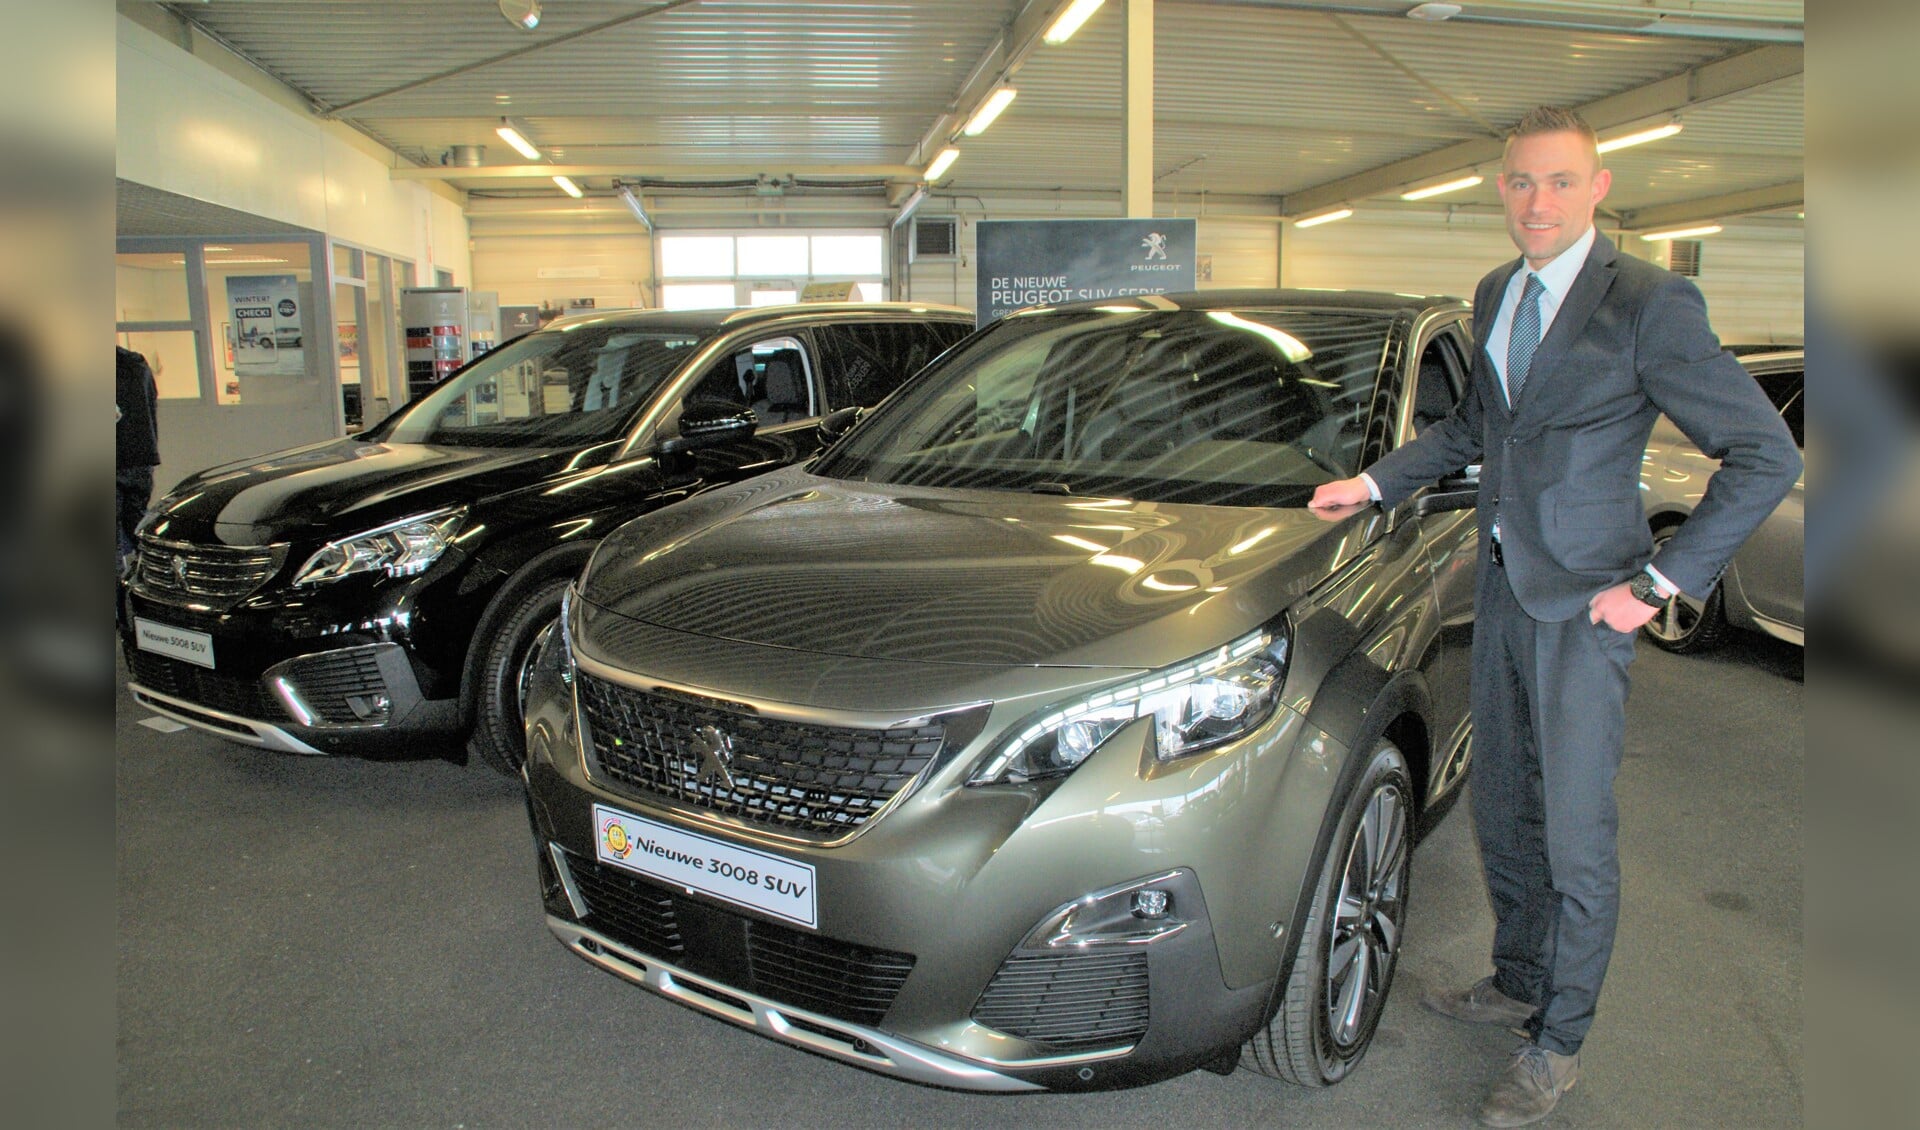 De nieuwe salesmanager Stefan van Tol bij de nieuwe Peugeot 3008 SUV.